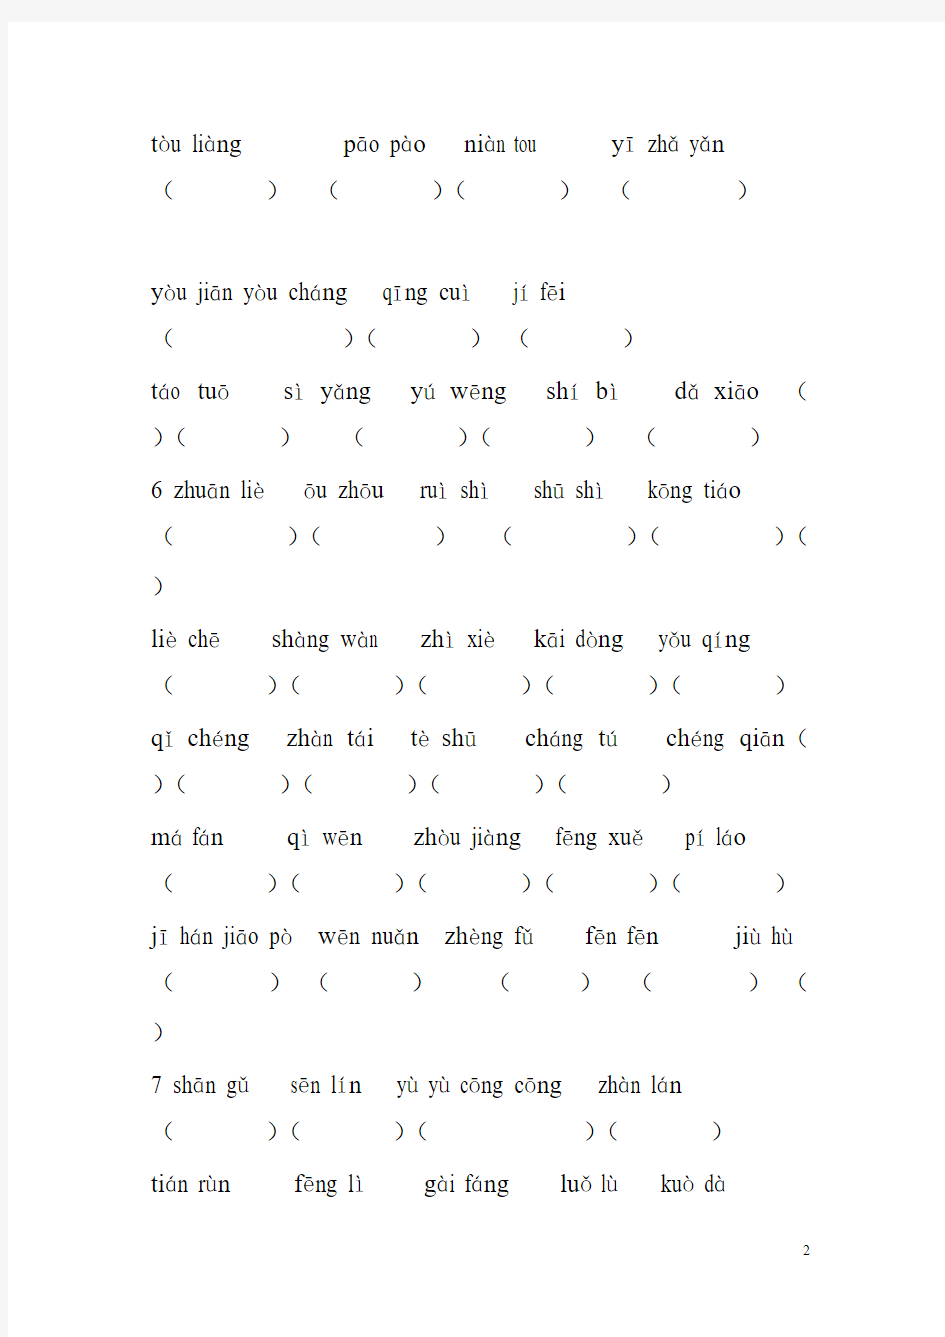 人教版三年级语文下册词语表总表看拼音写汉字-推荐下载